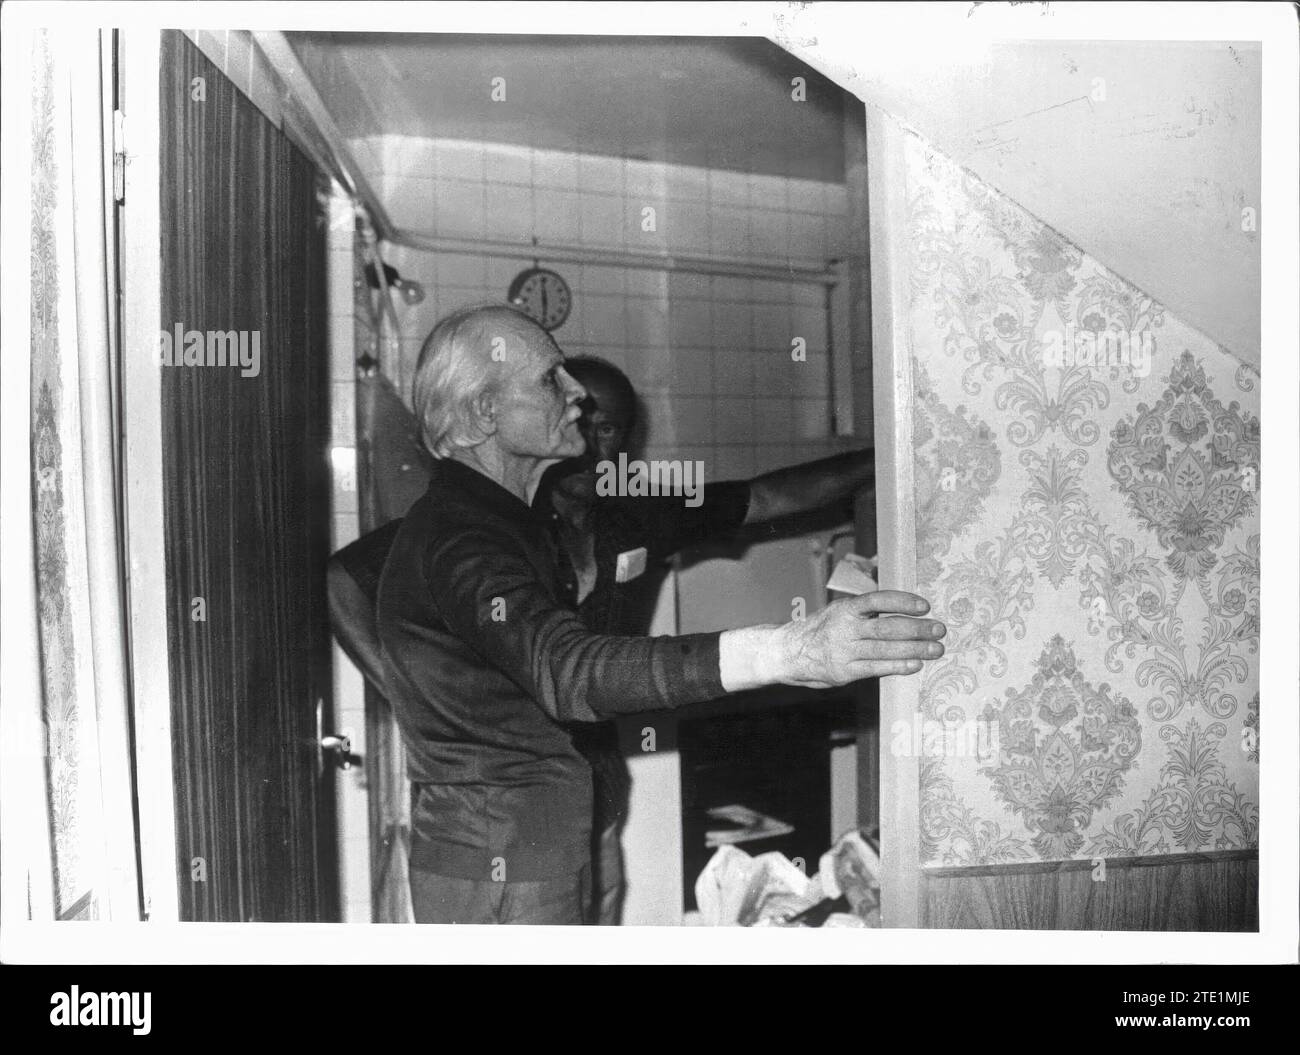 07/17/1977. Don Protasio zeigt die Breite des Eingangs zu dem kleinen Raum seines Hauses, der in den ersten Jahren seines Verschwindens als Zuflucht diente. Quelle: Album / Archivo ABC / Manuel Sanz Bermejo Stockfoto